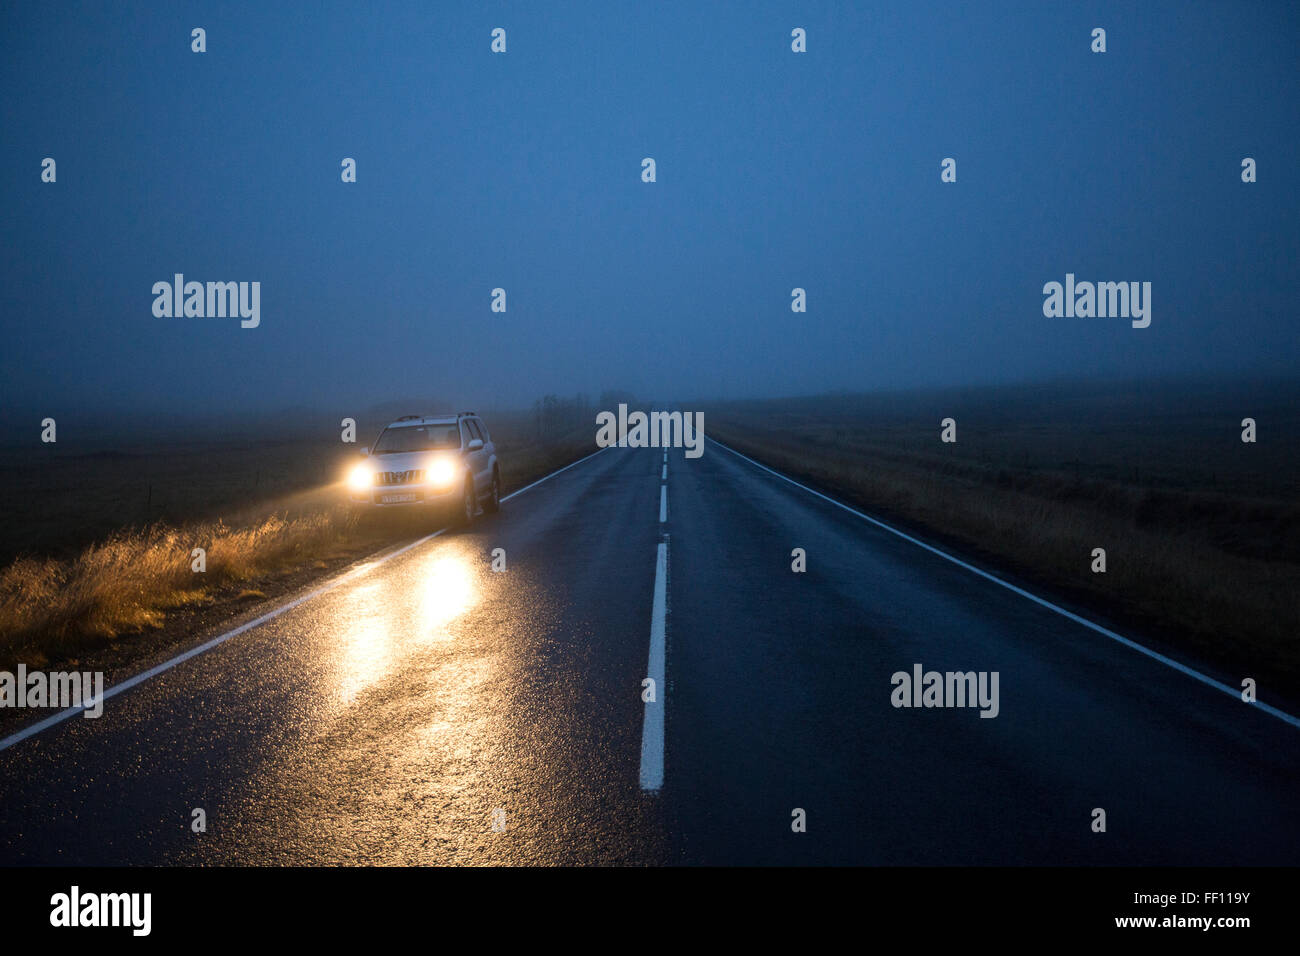 Auto Scheinwerfer auf Beifahrerseite blaues Auto Stockfotografie - Alamy